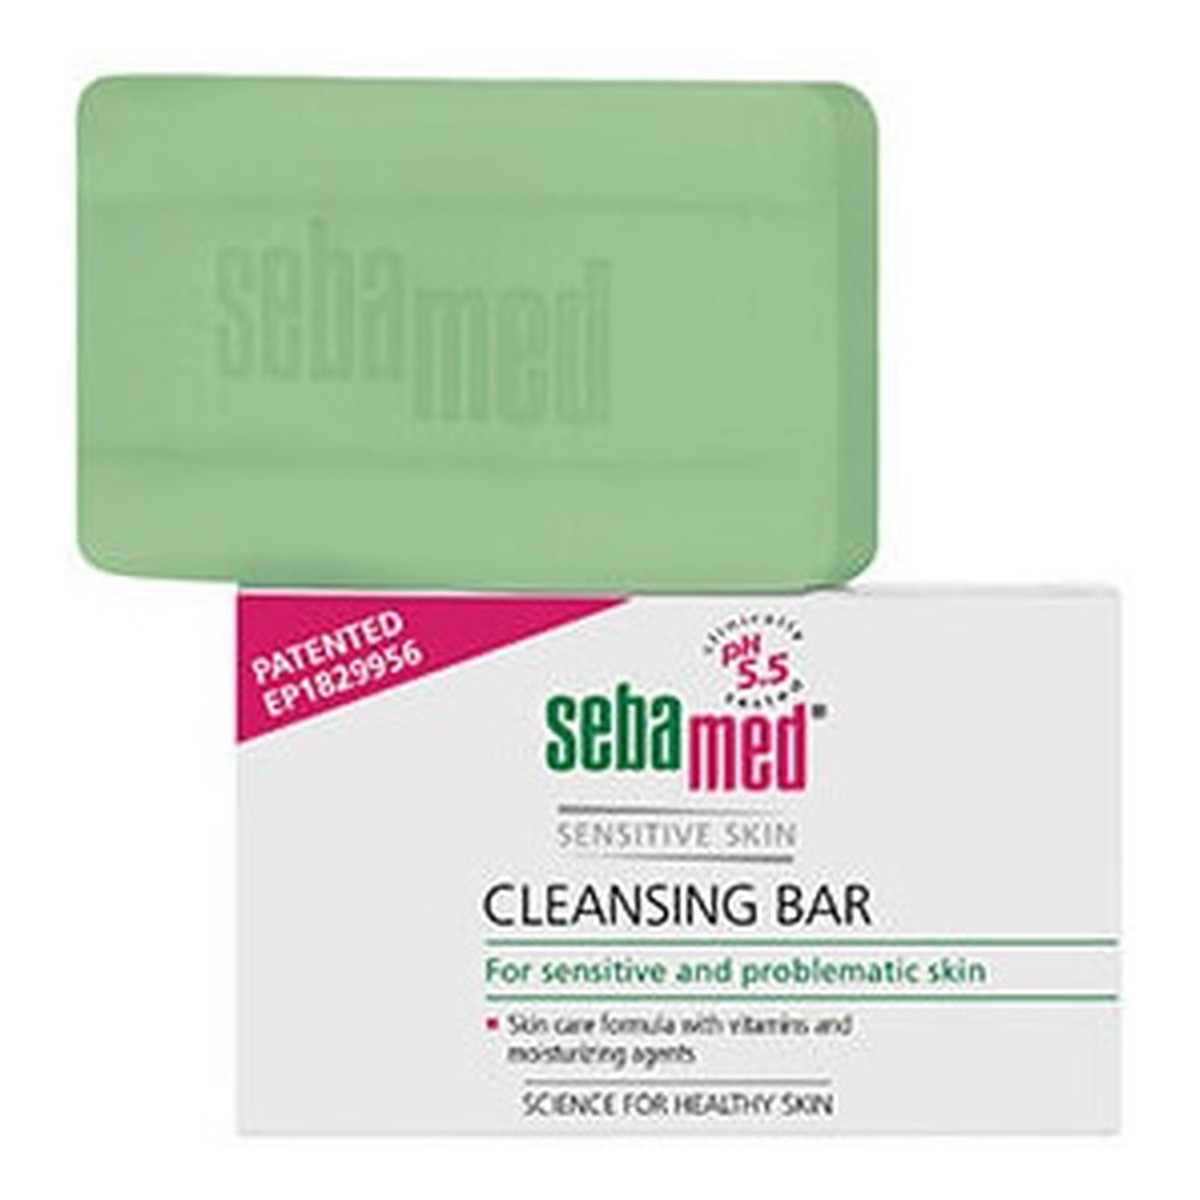 Sebamed Sensitive Skin Cleansing Bar Mydło w kostce do mycia ciała 100g